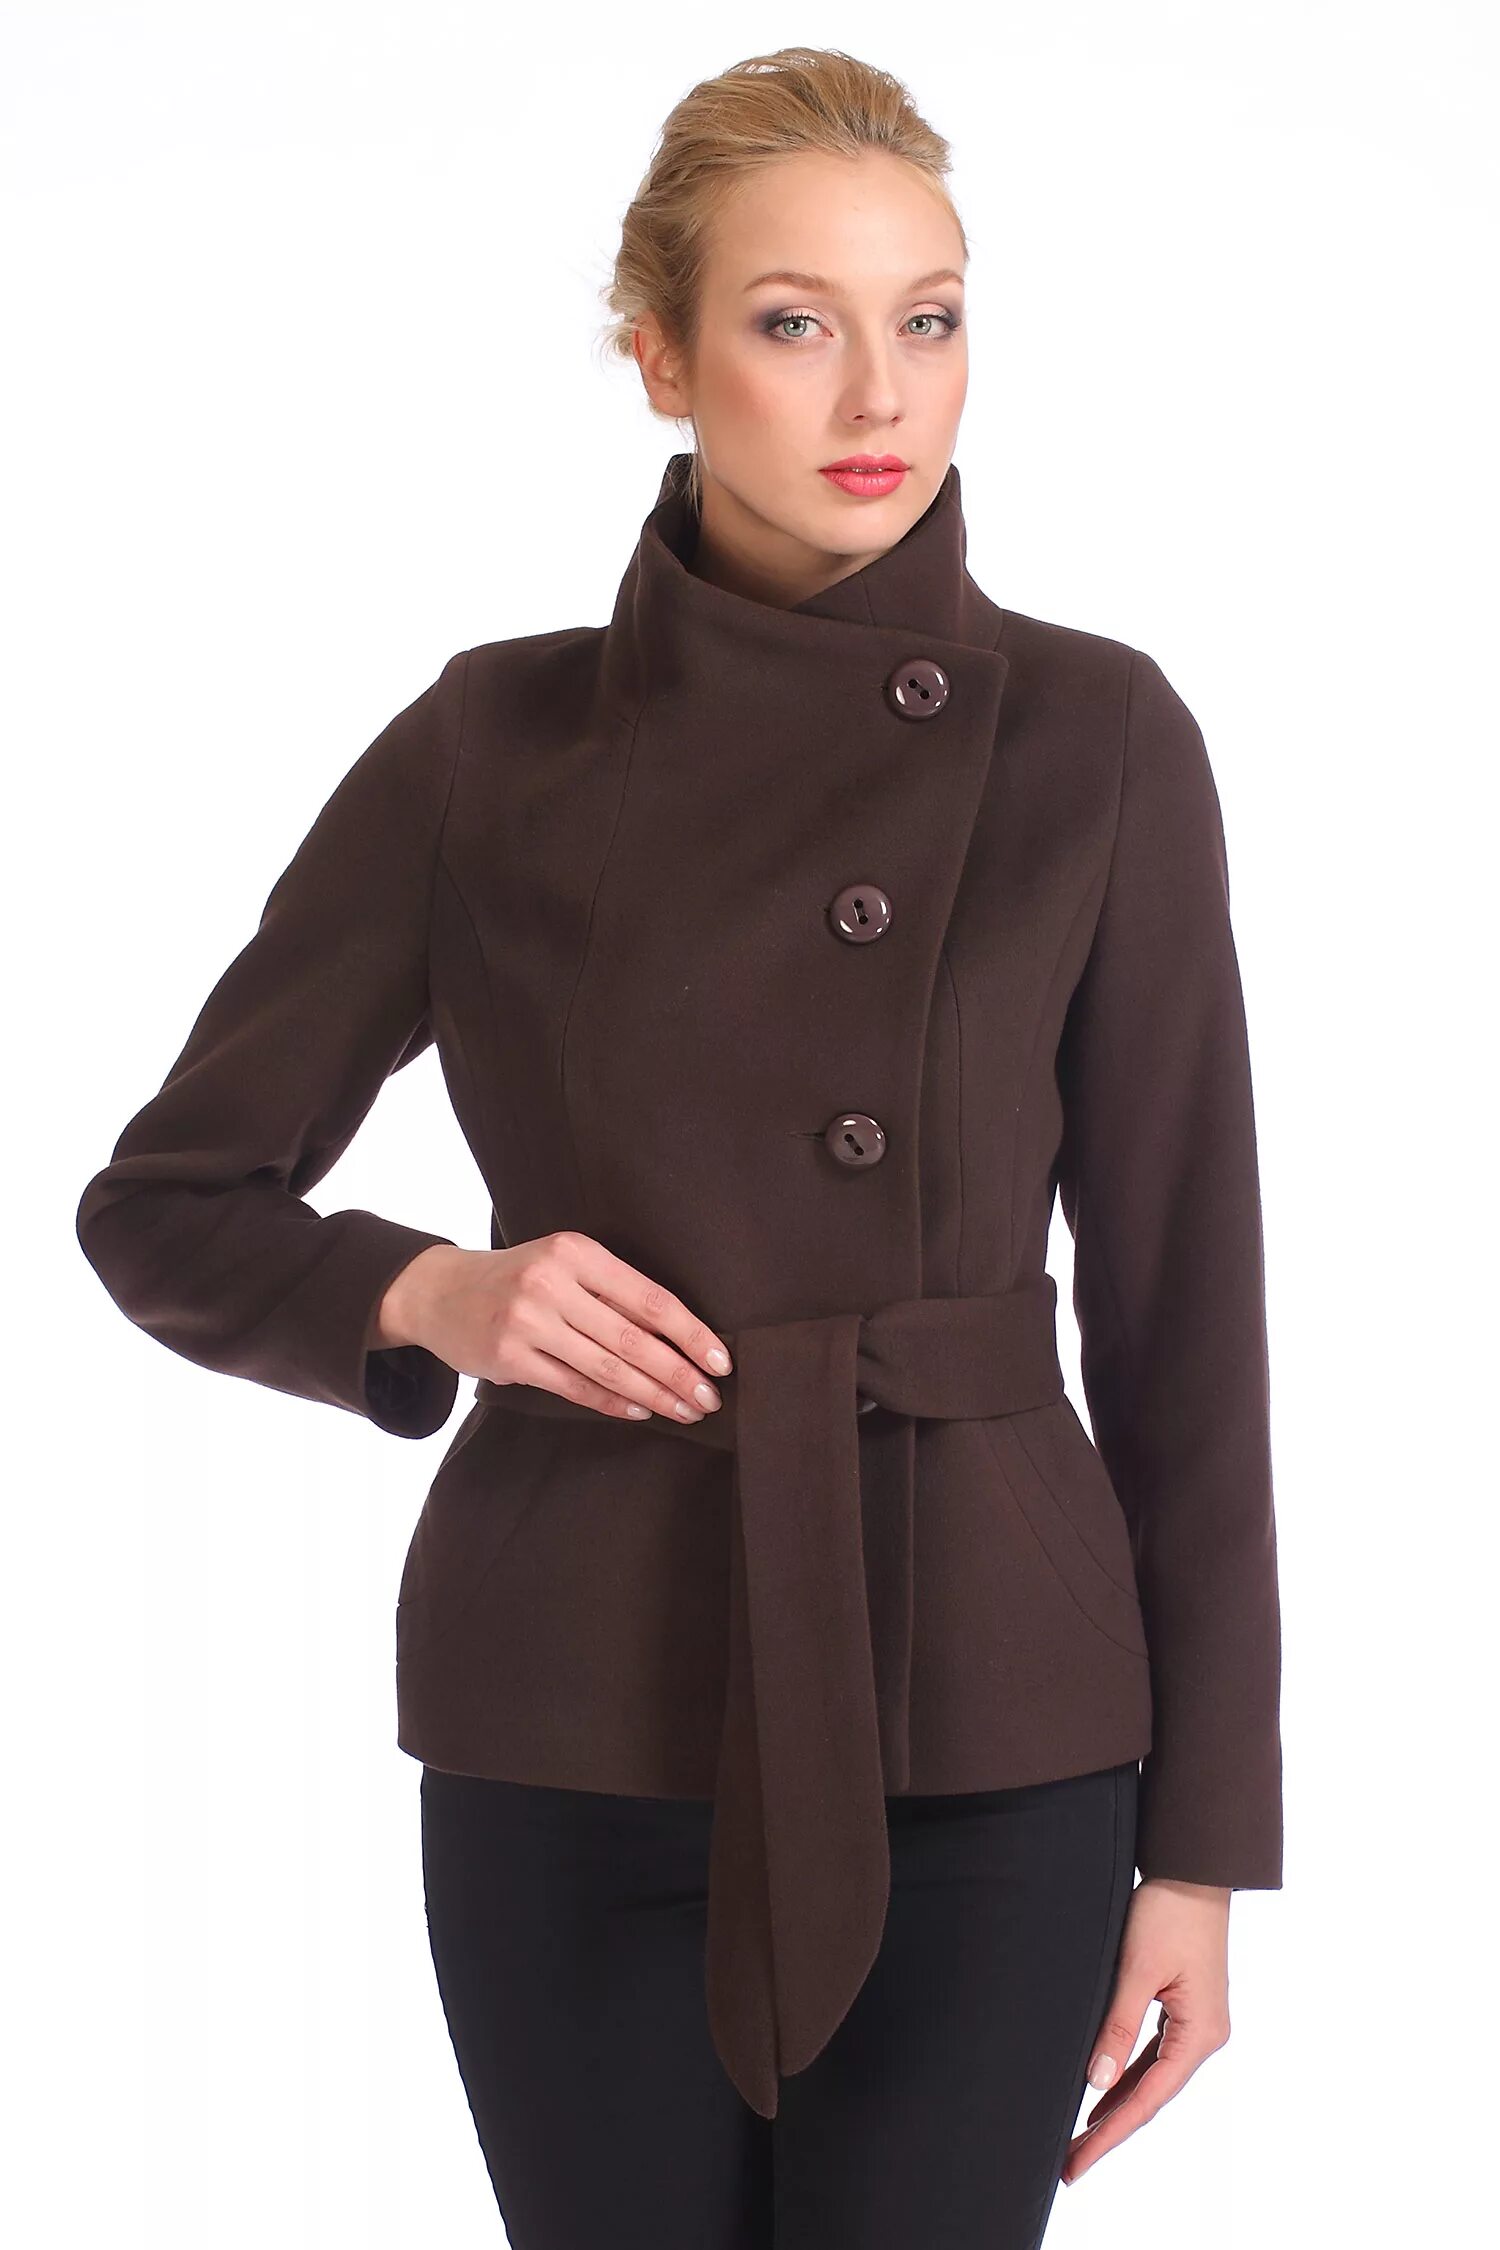 Женское пальто с воротником купить. МОСМЕХА пальто с воротником женское. Короткое пальто женское. Полупальто женское. Укороченное пальто.